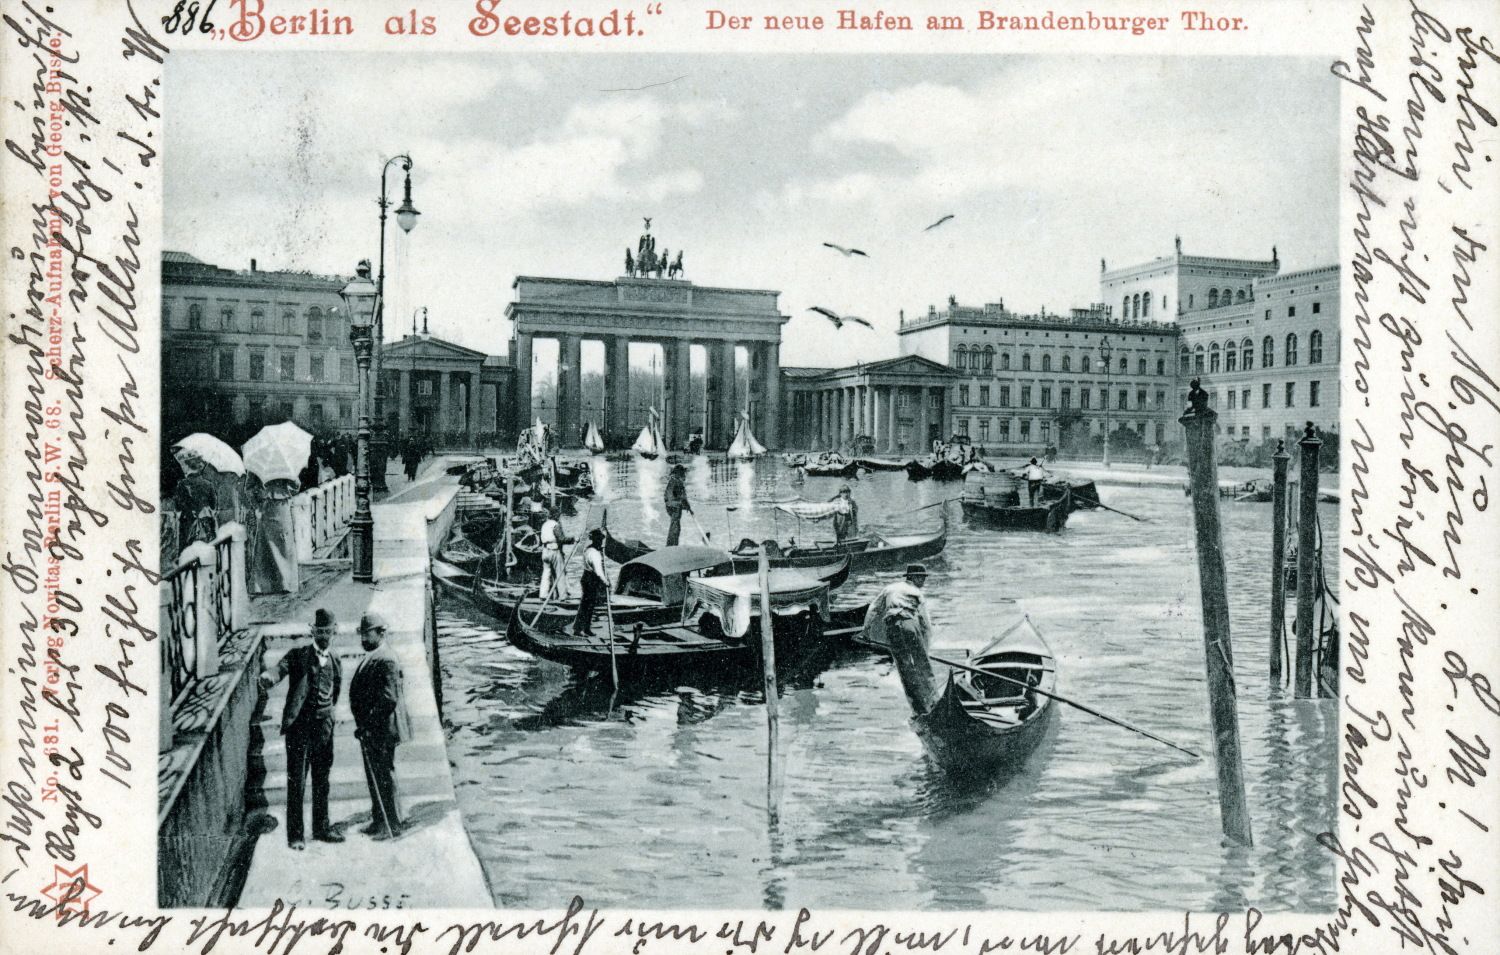 Georg Busse, "Berlin als Seestadt." Der neue Hafen am Brandenburger Tor, 1904, Postkarte